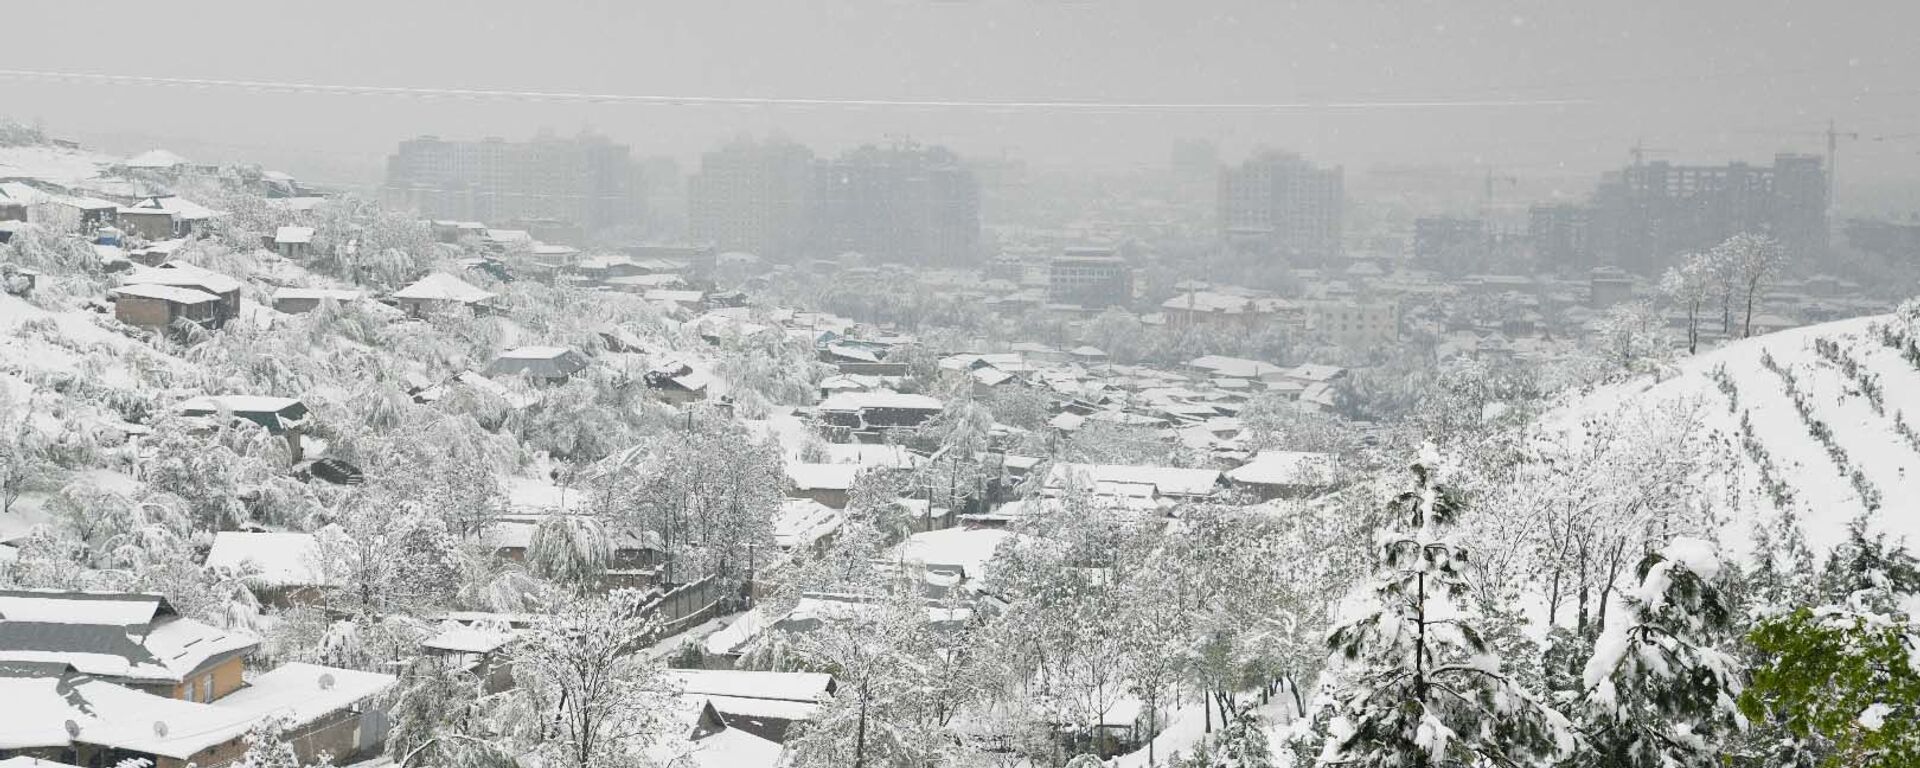 Снегопад в Душанбе - Sputnik Тоҷикистон, 1920, 16.11.2021